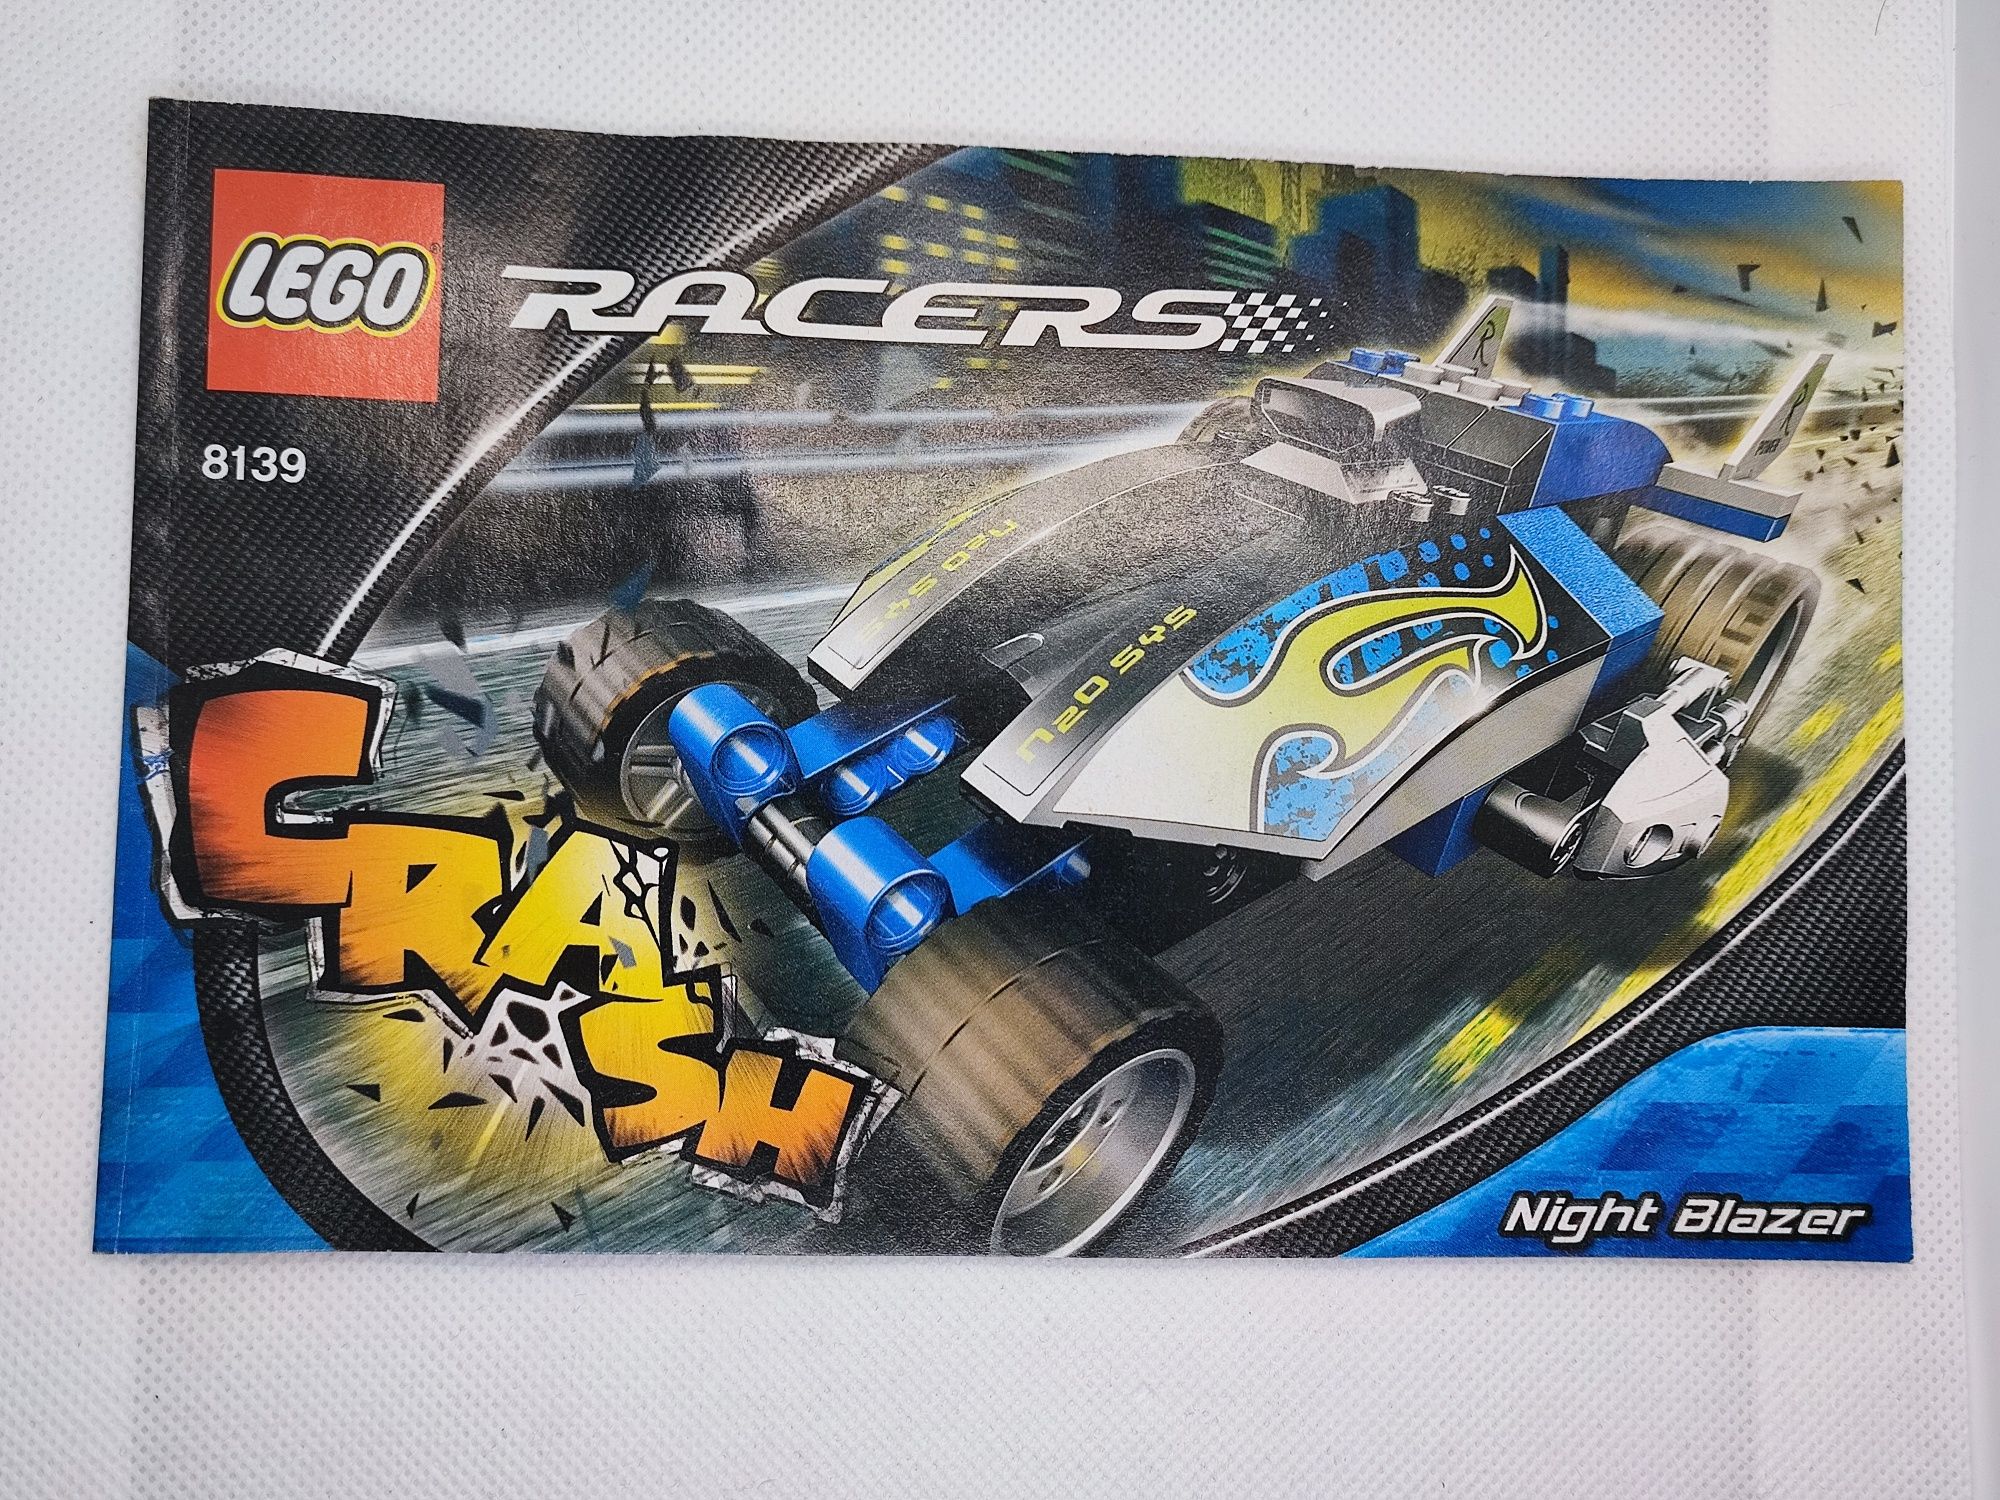 LEGO® 8139 Racers - Night Blazer